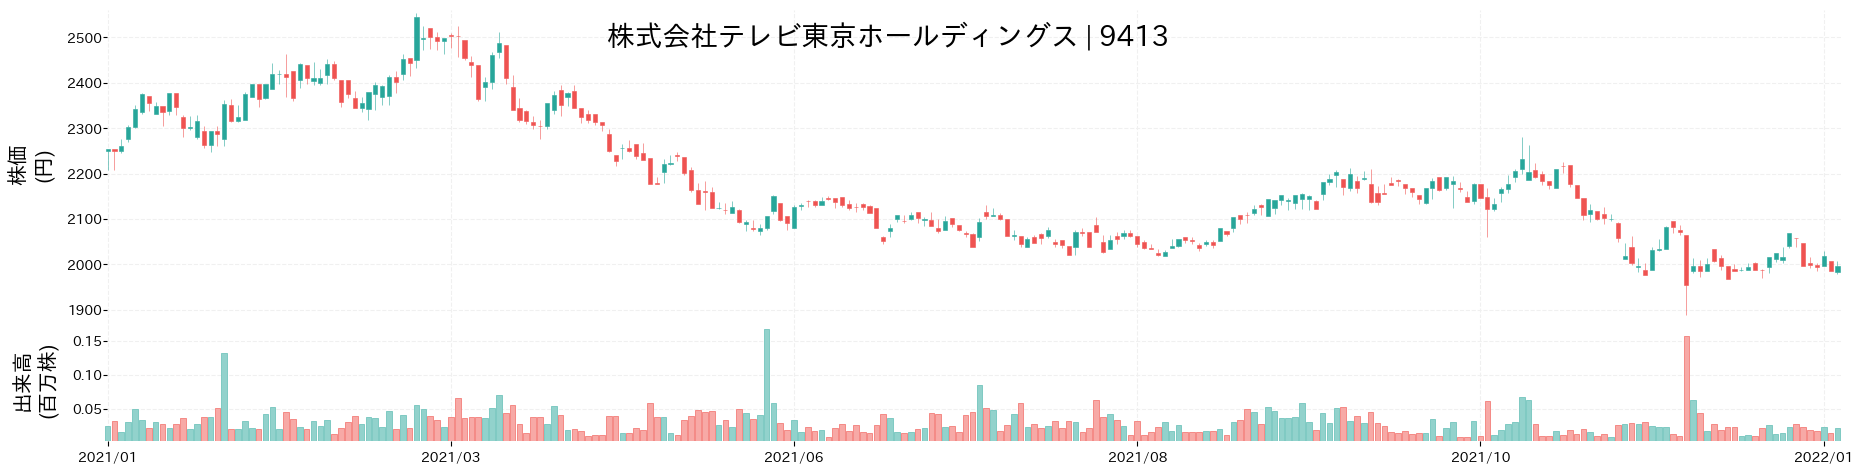 テレビ東京ホールディングスの株価推移(2021)